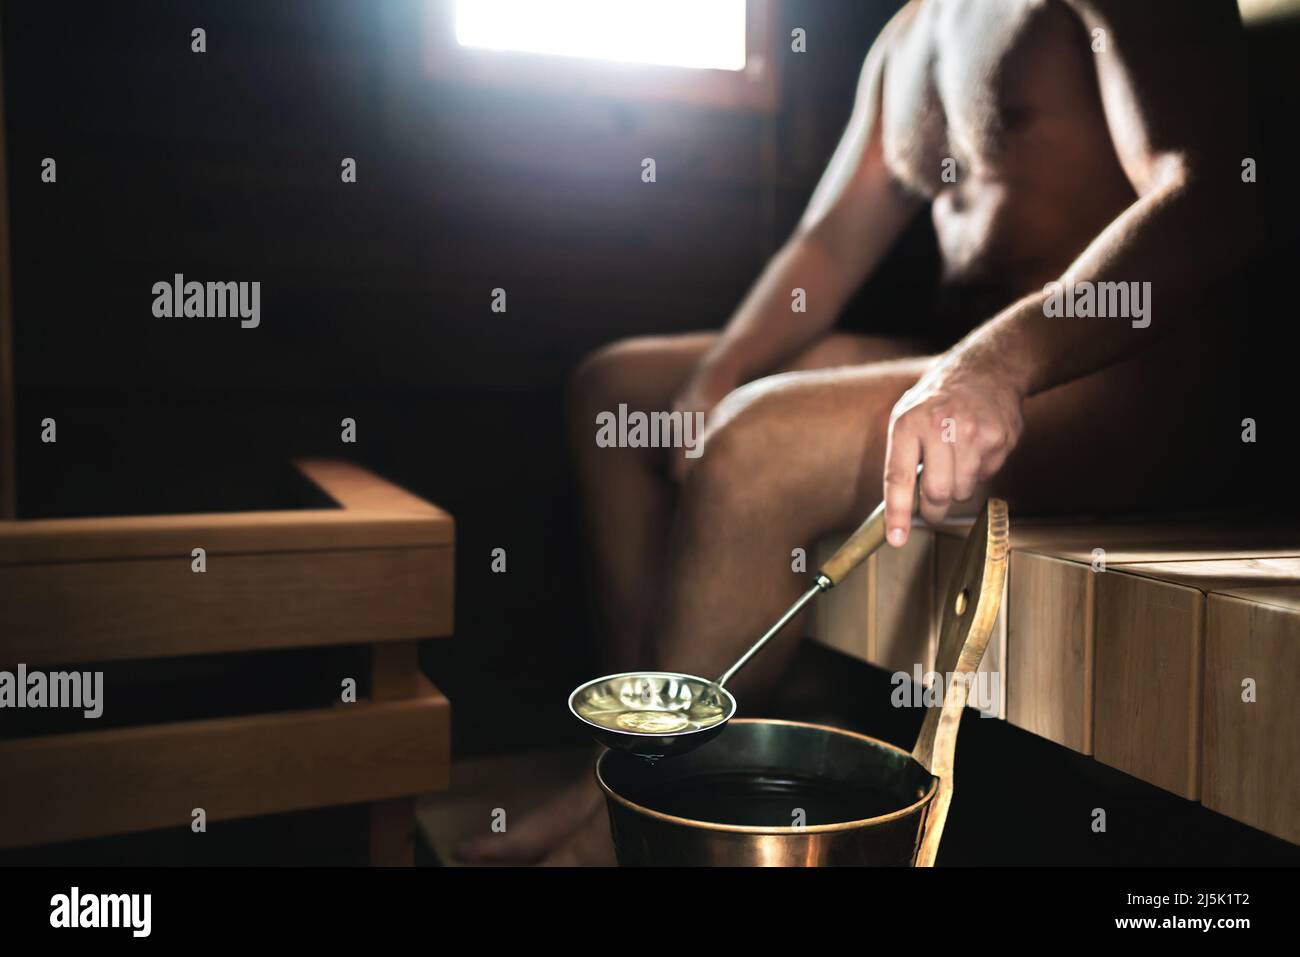 Uomo in sauna. Bagno turco finlandese. Persona che versa l'acqua sulle pietre calde dal secchio. Relax e benessere tradizionali in Finlandia. Foto Stock